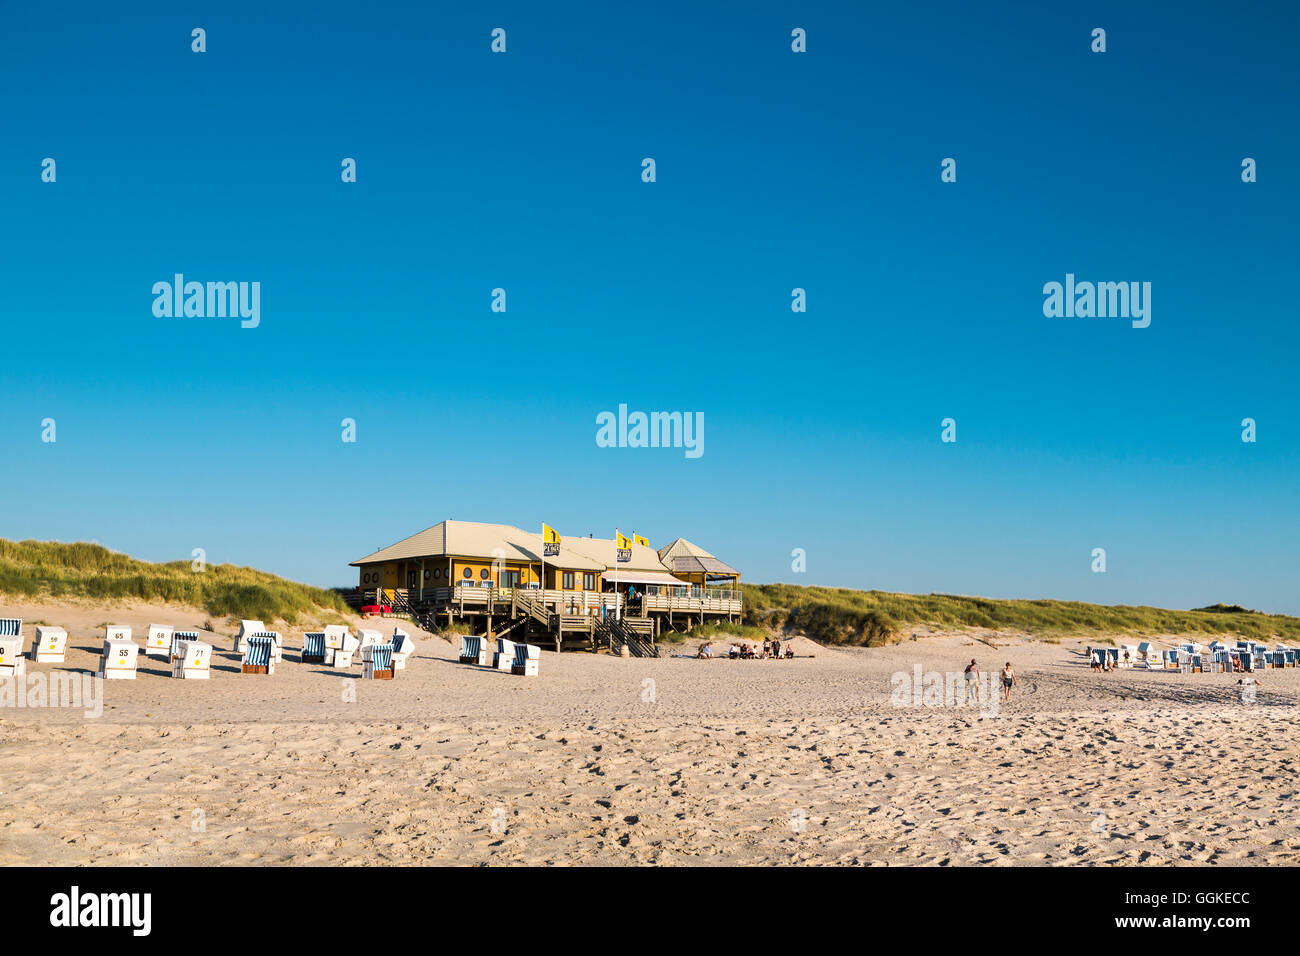 El bar de la playa La Grande Plage, Sylt Island, Islas de Frisia septentrional, Schleswig-Holstein, Alemania Foto de stock